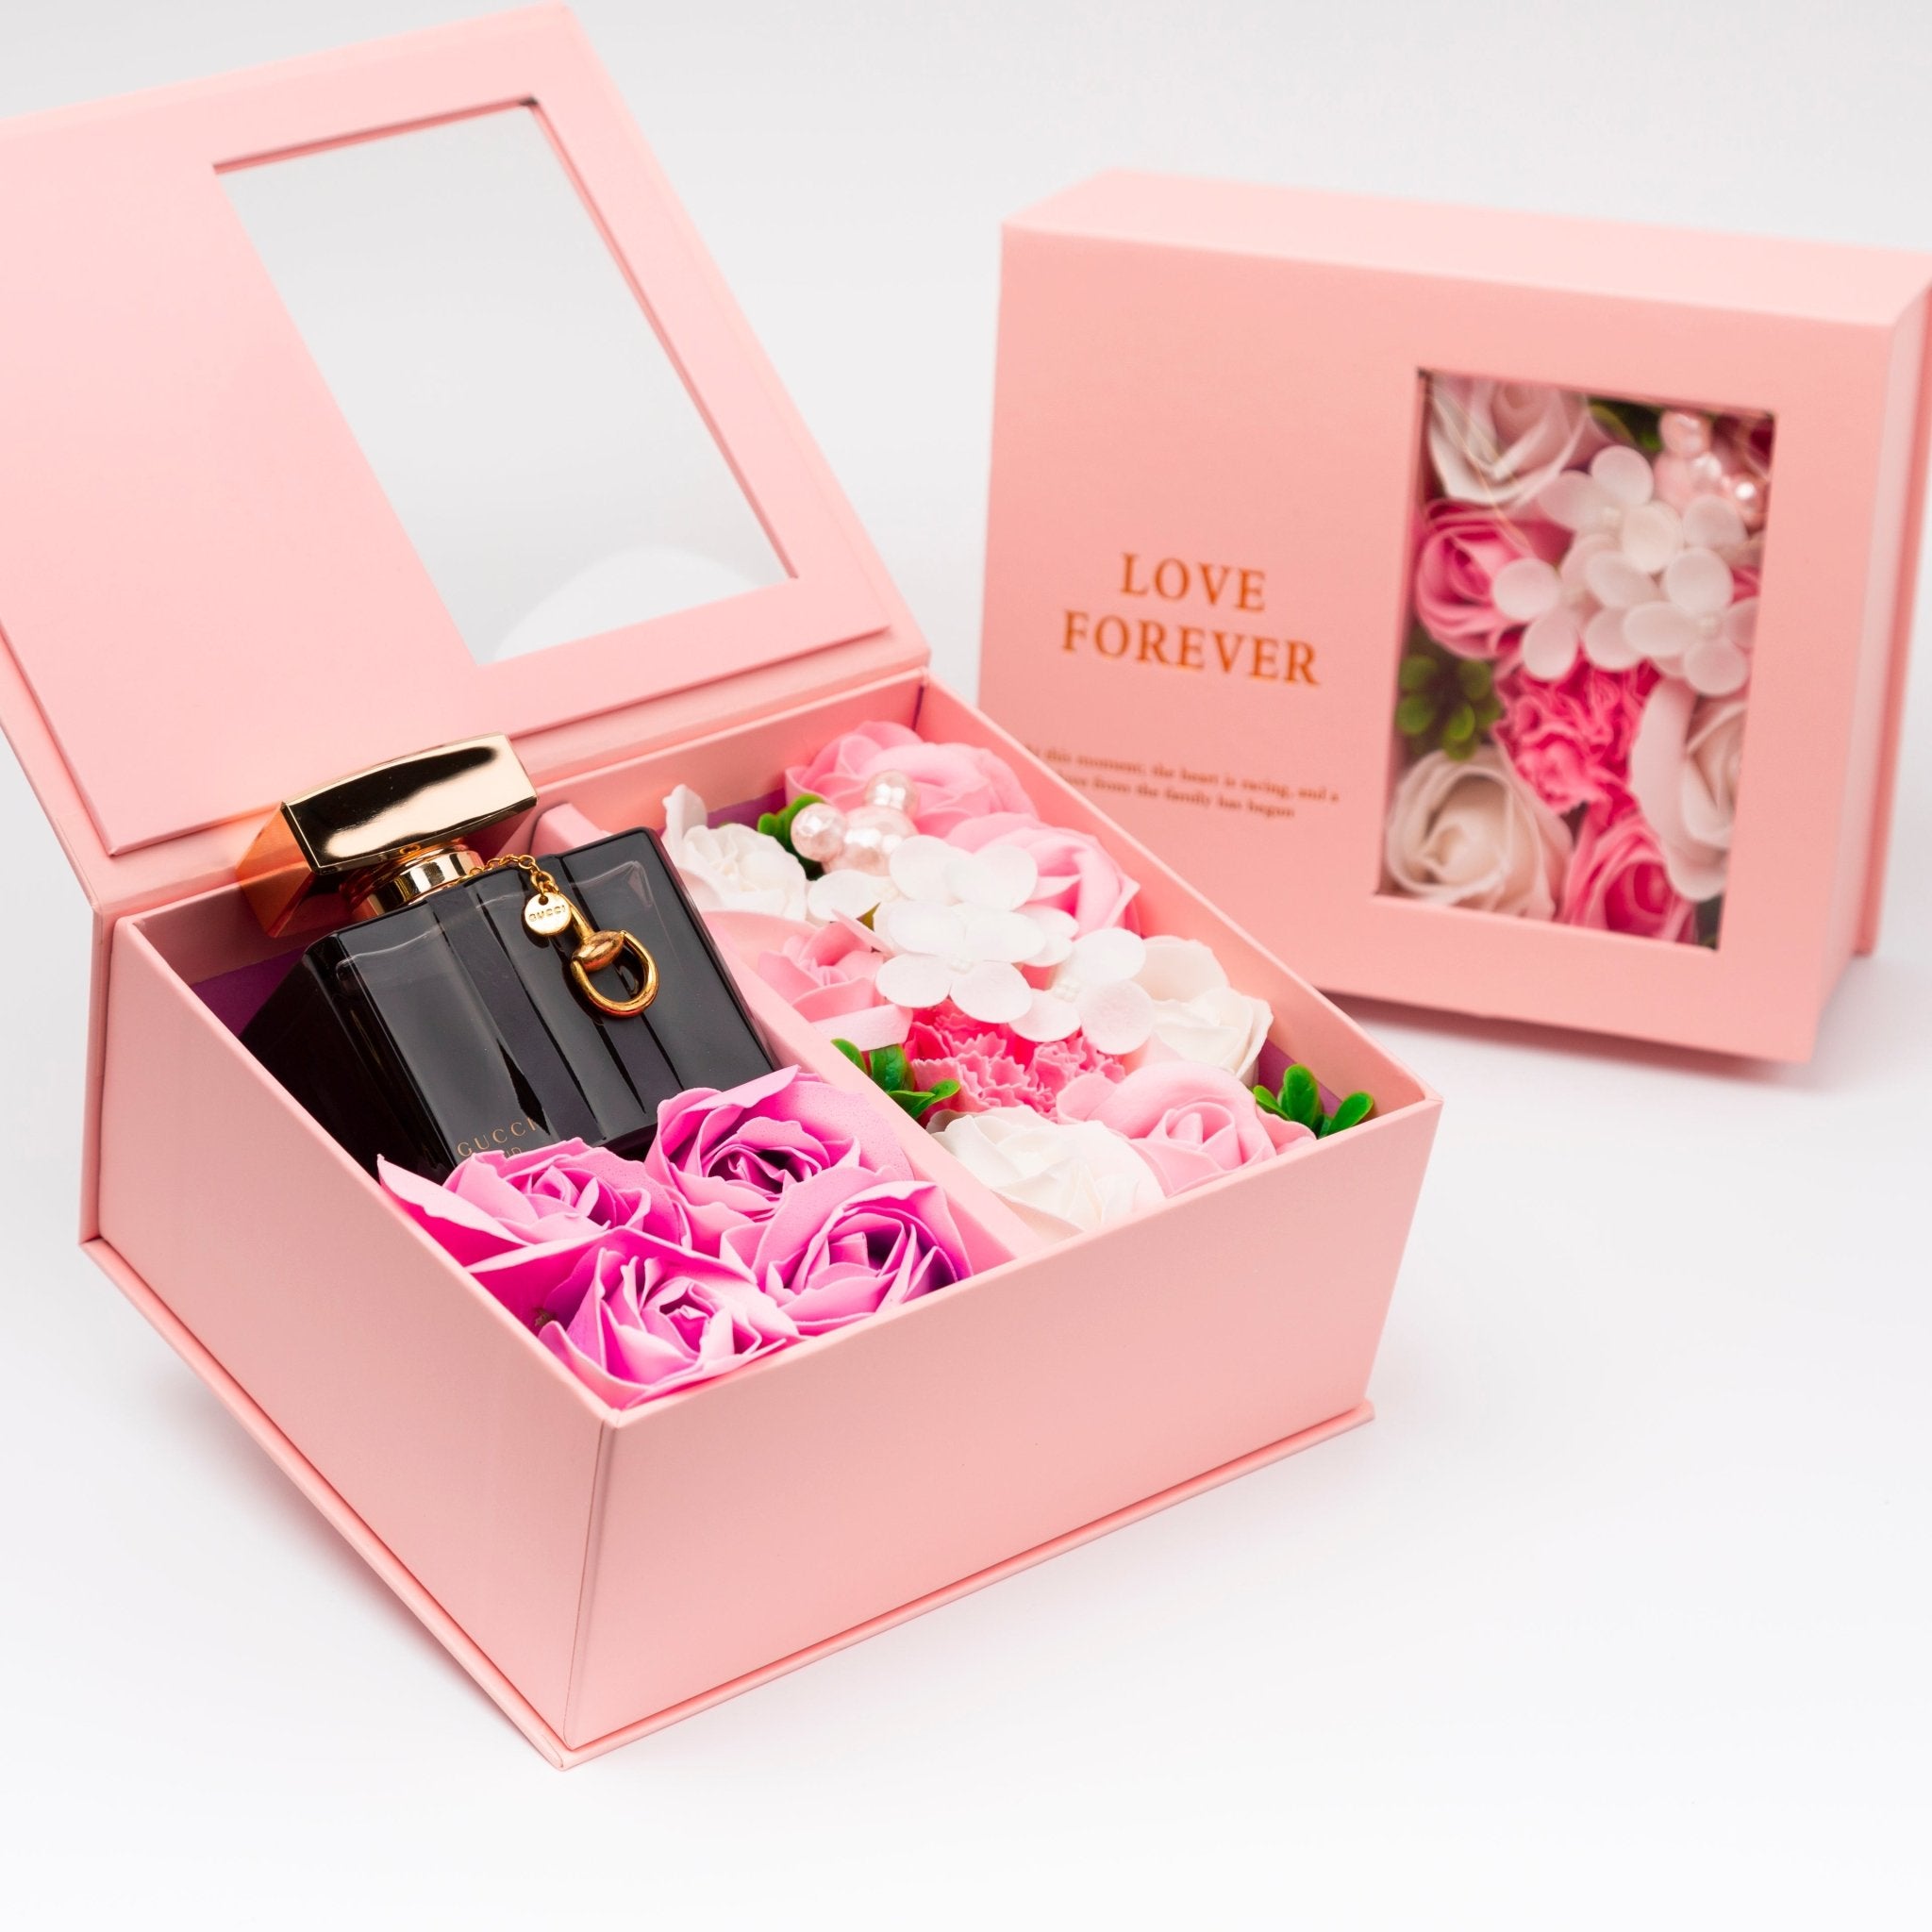 Flower Box - Perfume Gift For Women 22 - #shoFlower Box - Perfume Gift For Women 22p_name#Flower Box - Perfume Gift For Women 22Gift Boxes & TinsTakreemTakreem.joWomenPerfumeFlower Box - Perfume Gift For Women 22 - Takreem.jo